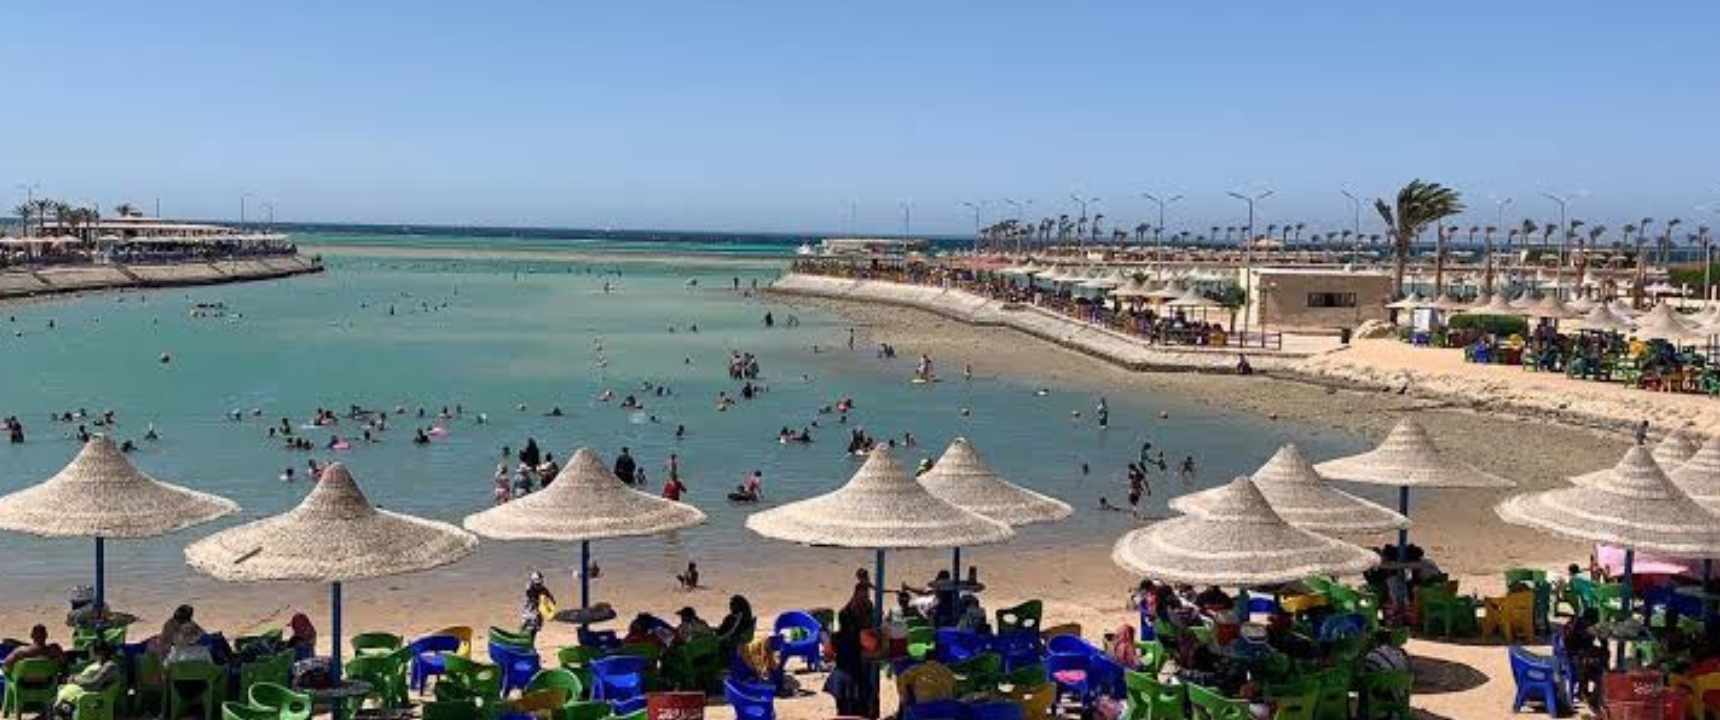 تذكرة دخول شواطئ اسكندرية بسعر مناسب للجميع طوال العام  